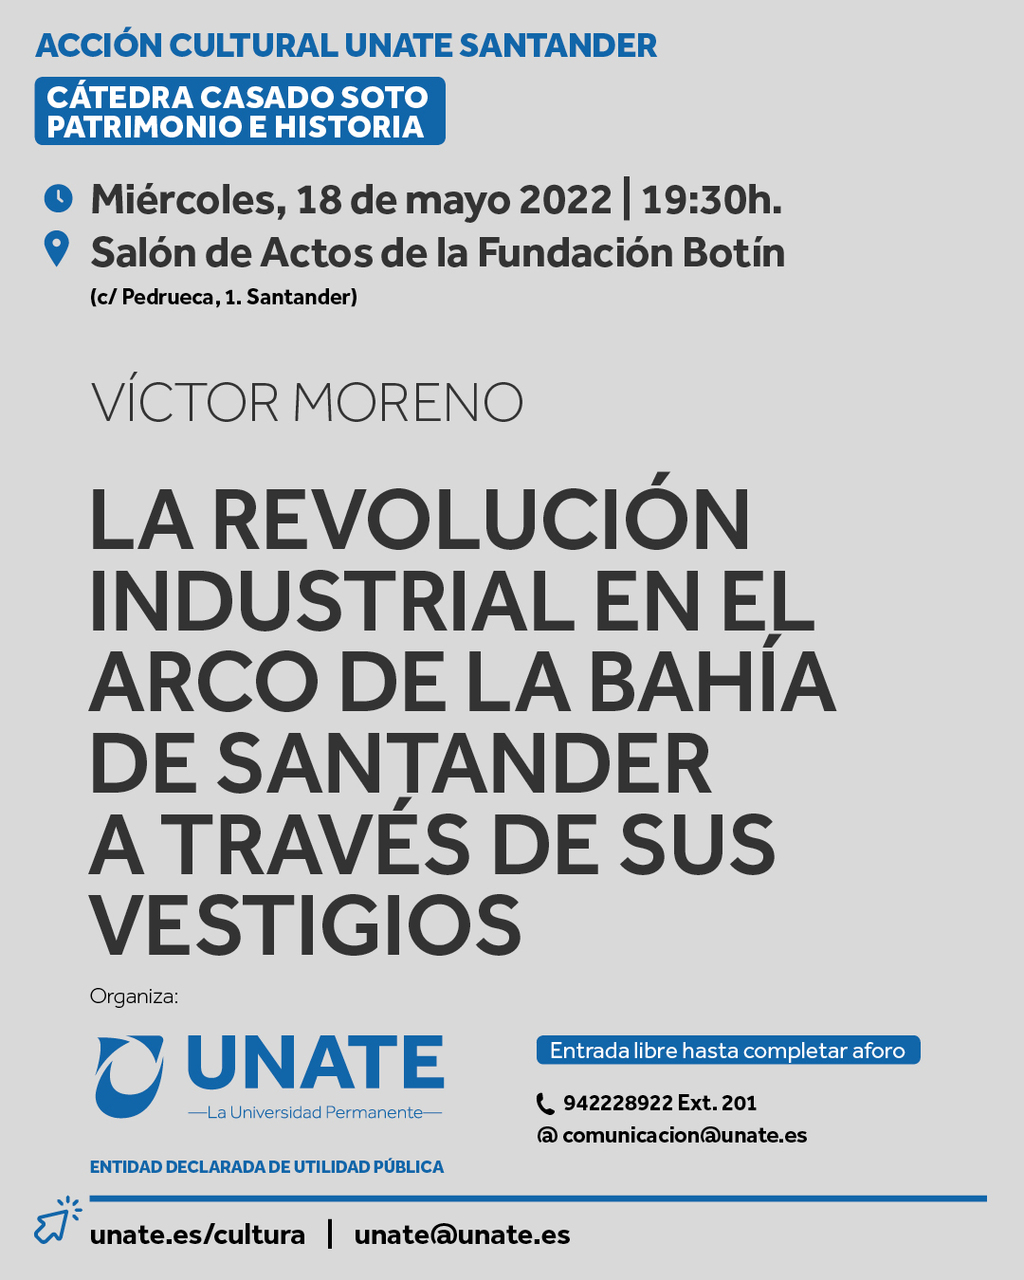 "La Revolución Industrial en el arco de la Bahía de Santander a través de sus vestigios", por Víctor Moreno